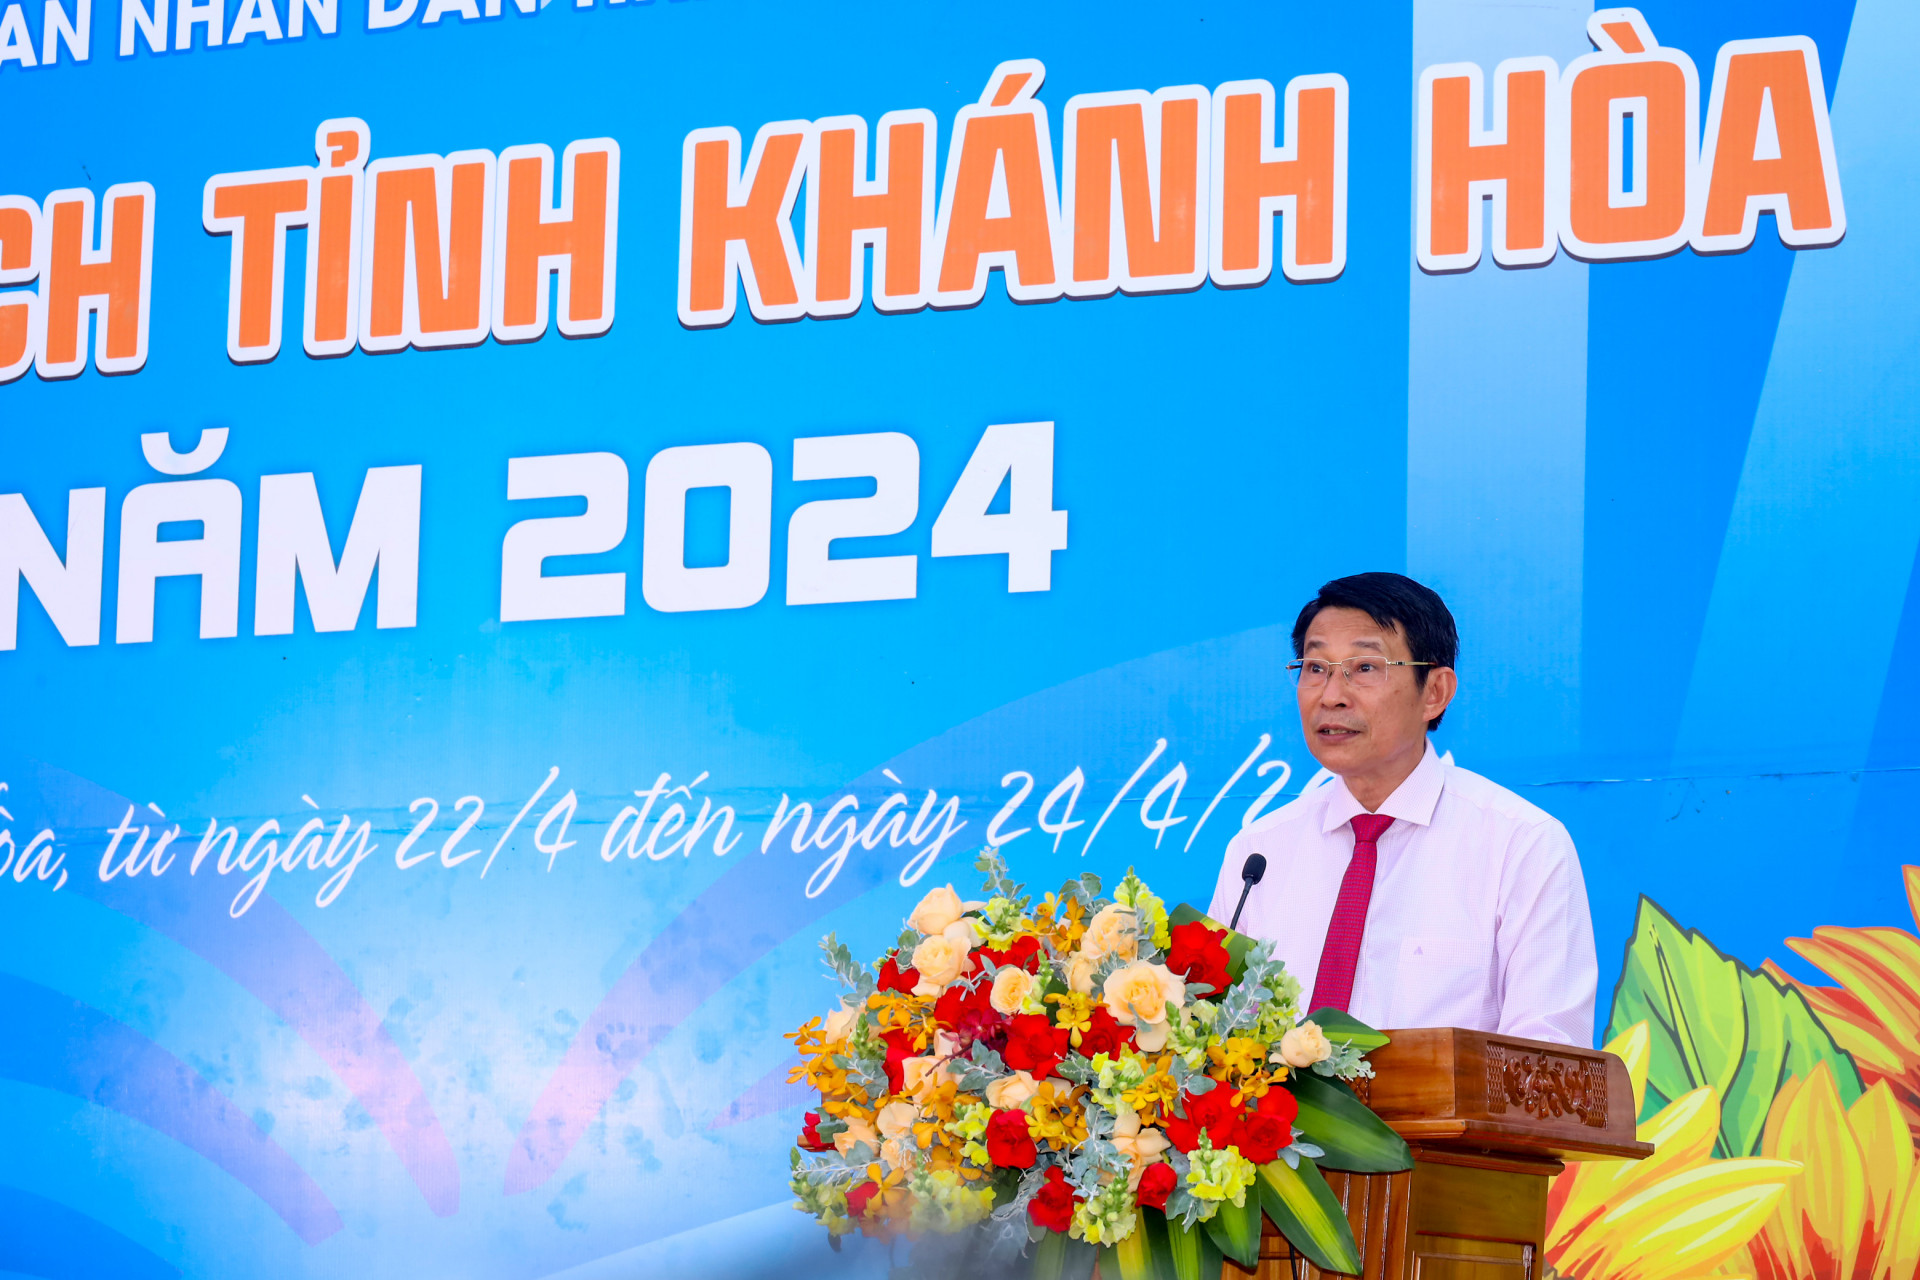 Đồng chí Đinh Văn Thiệu phát biểu khai mạc Hội sách tỉnh Khánh Hòa năm 2024.

